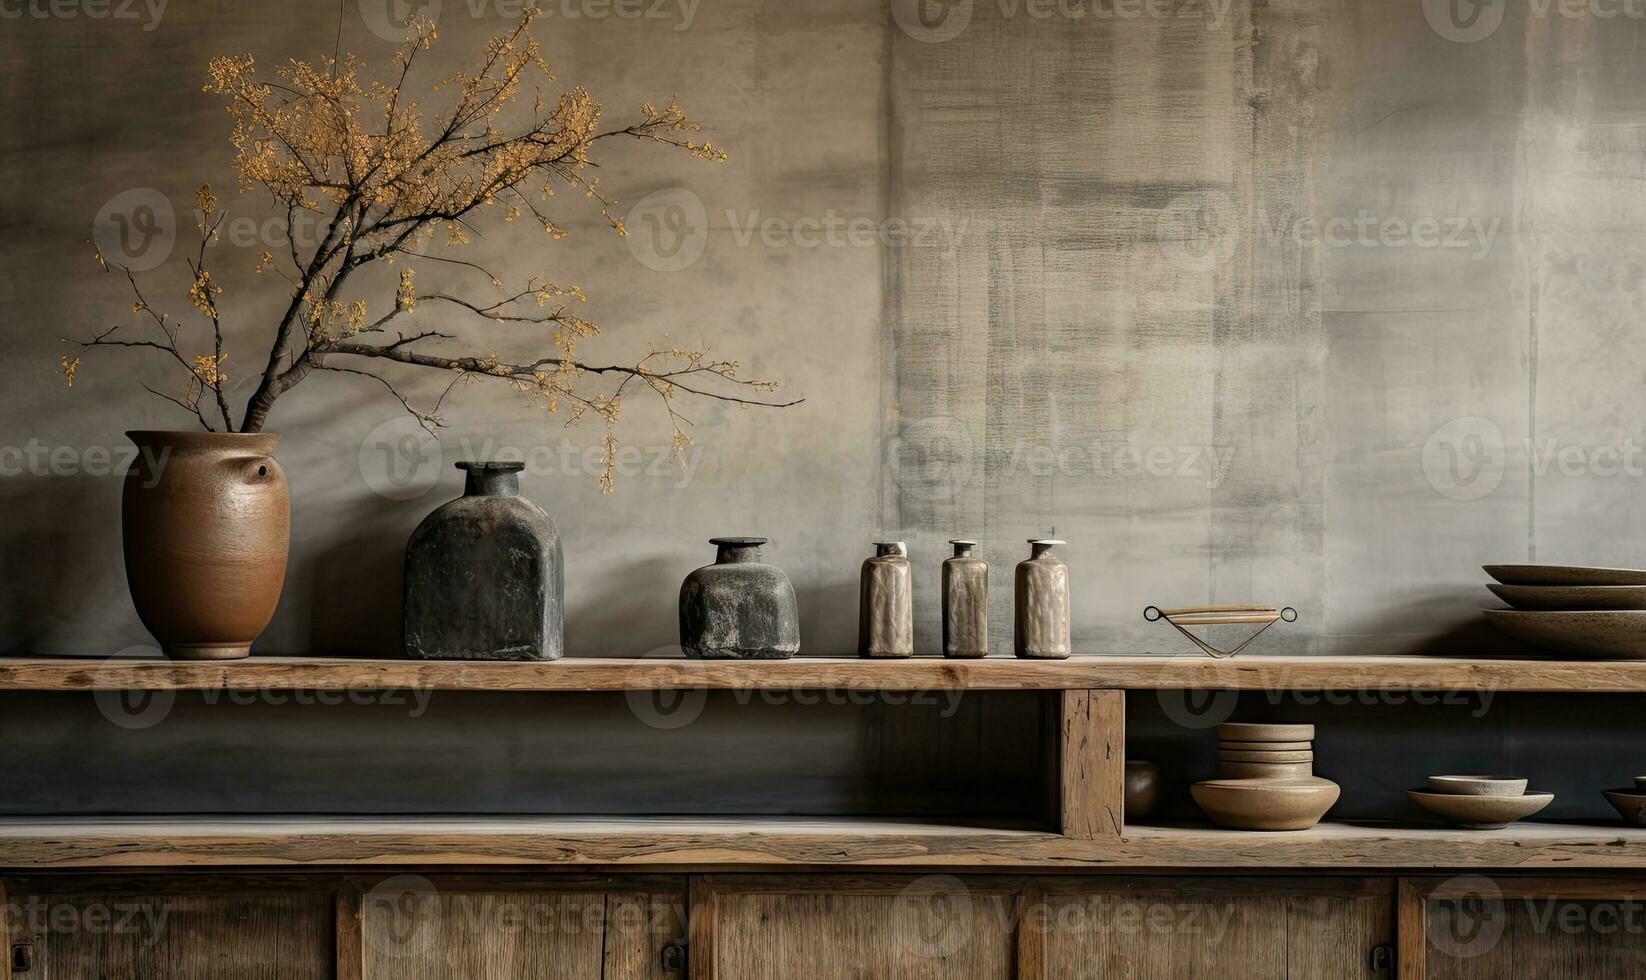 wabi-sabi interior con floreros en un estante y mesa, . creado por ai foto